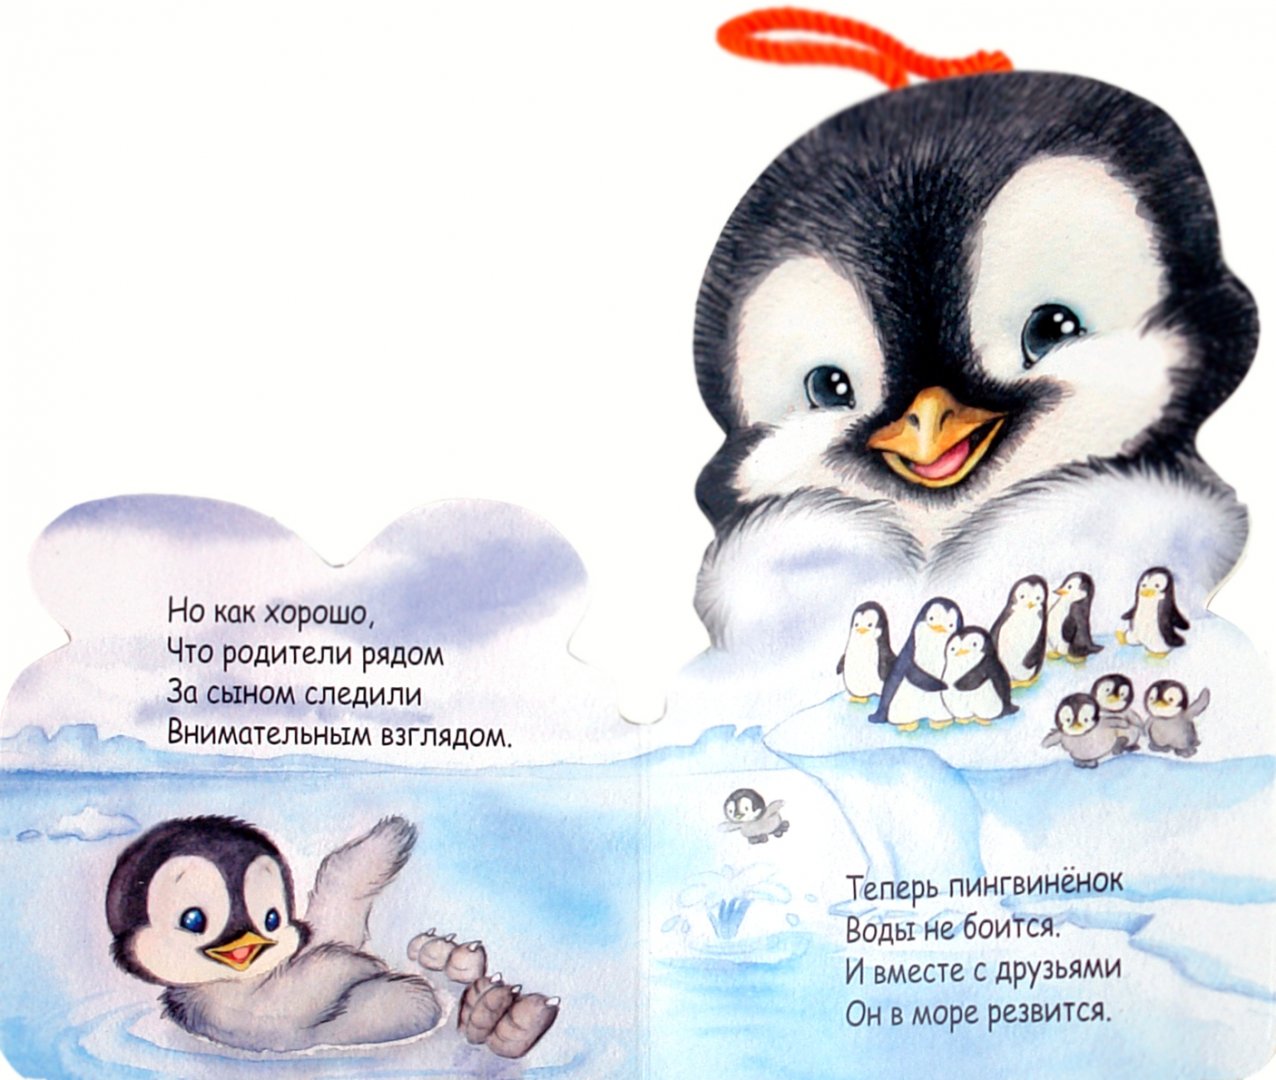 Иллюстрация 1 из 6 для Мой друг пингвин - Бурмистрова, Мороз | Лабиринт - книги. Источник: Лабиринт